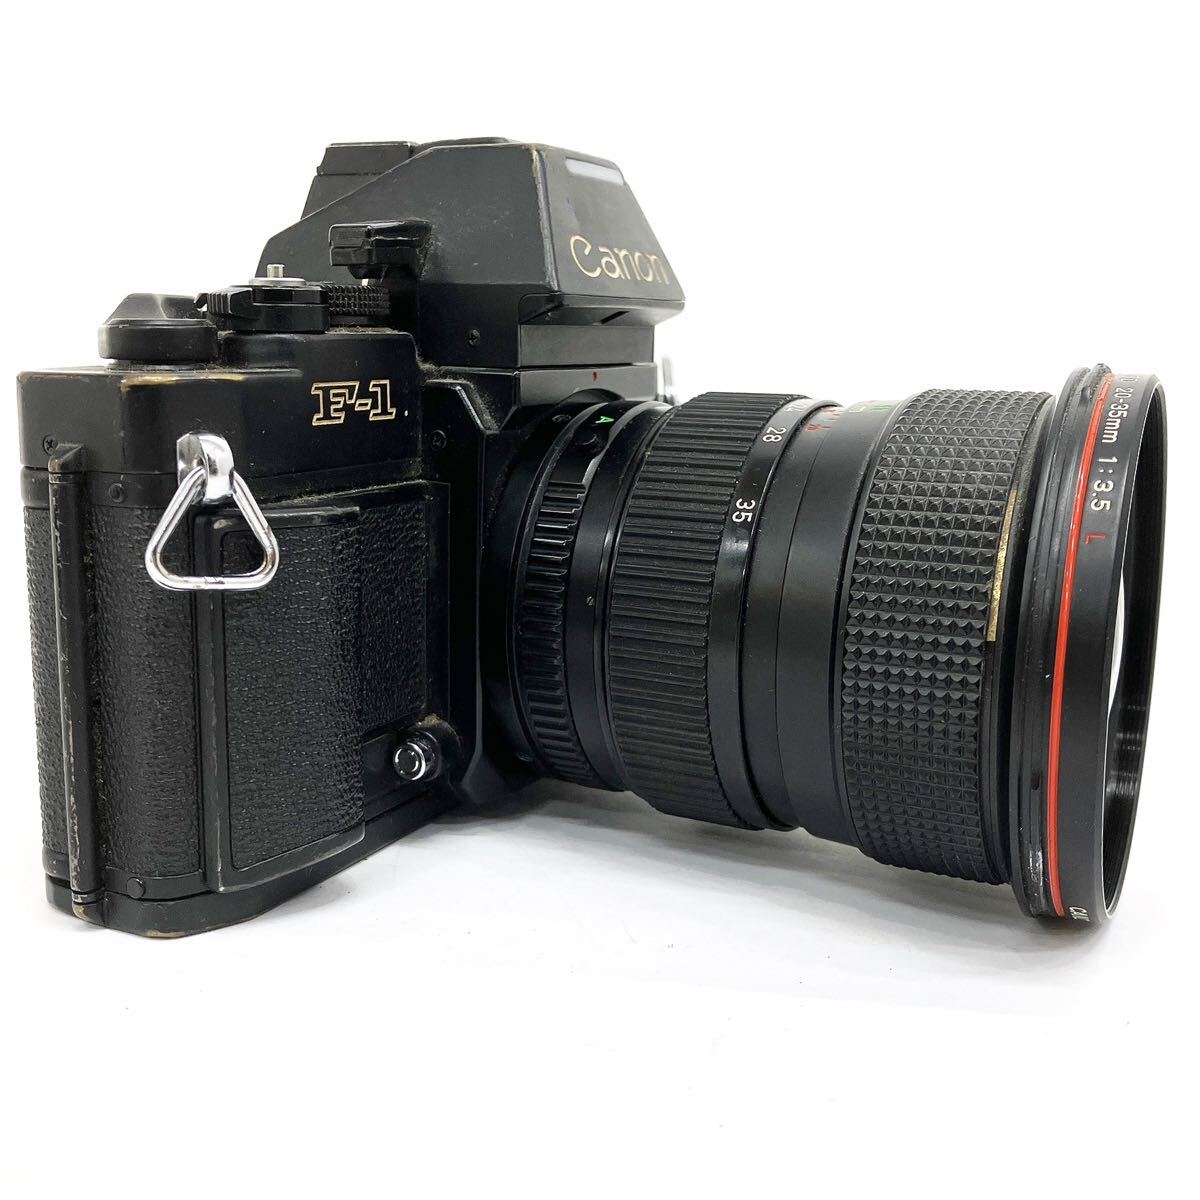 Canon キャノン F-1 ボディ ZOOM LENS FD 20-35mm 1:3.5mm L レンズ AE ワインダー FN セット 一眼レフカメラ alp川0415_画像2